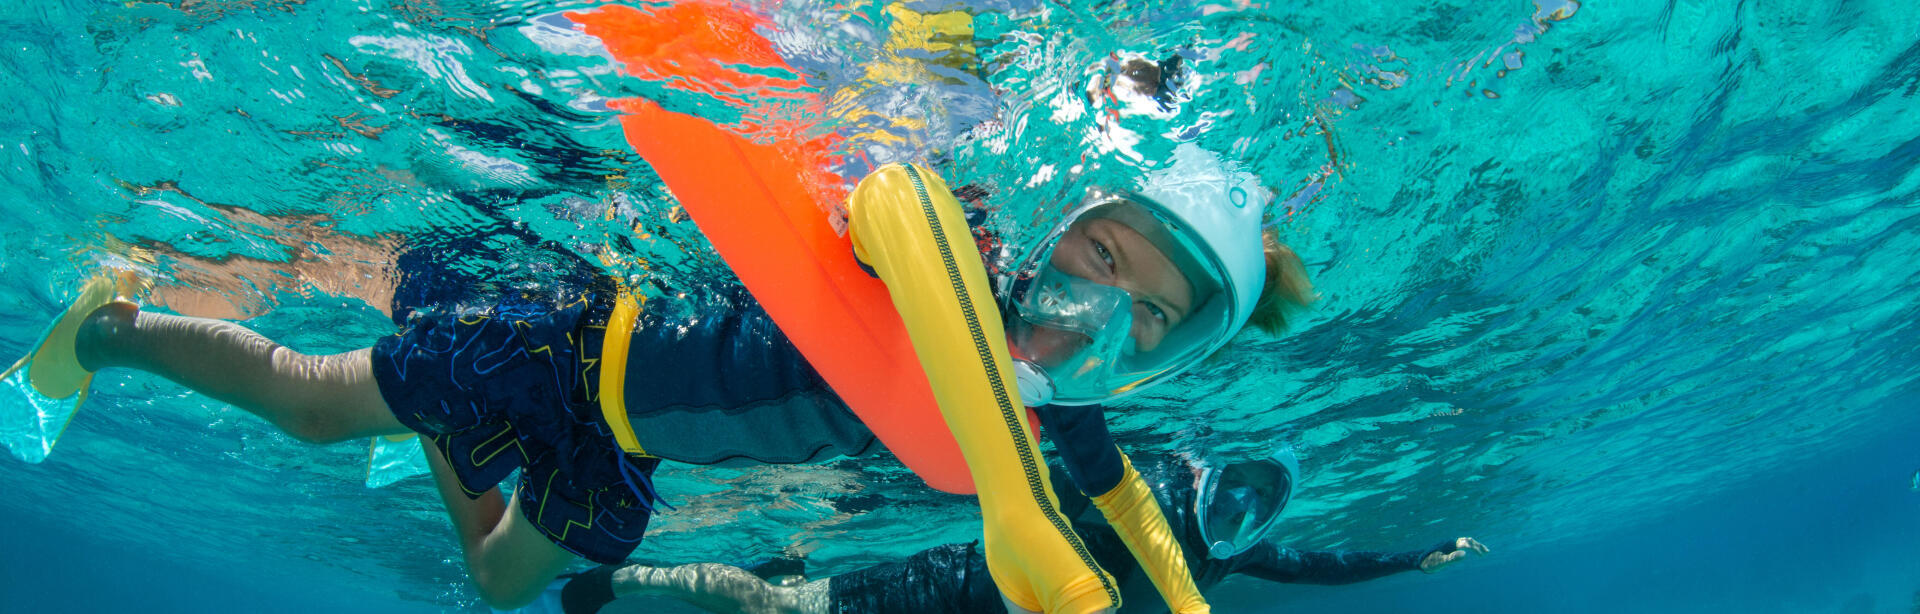 As vantagens de ter uma ajuda à flutuabilidade no snorkeling, passeio aquático